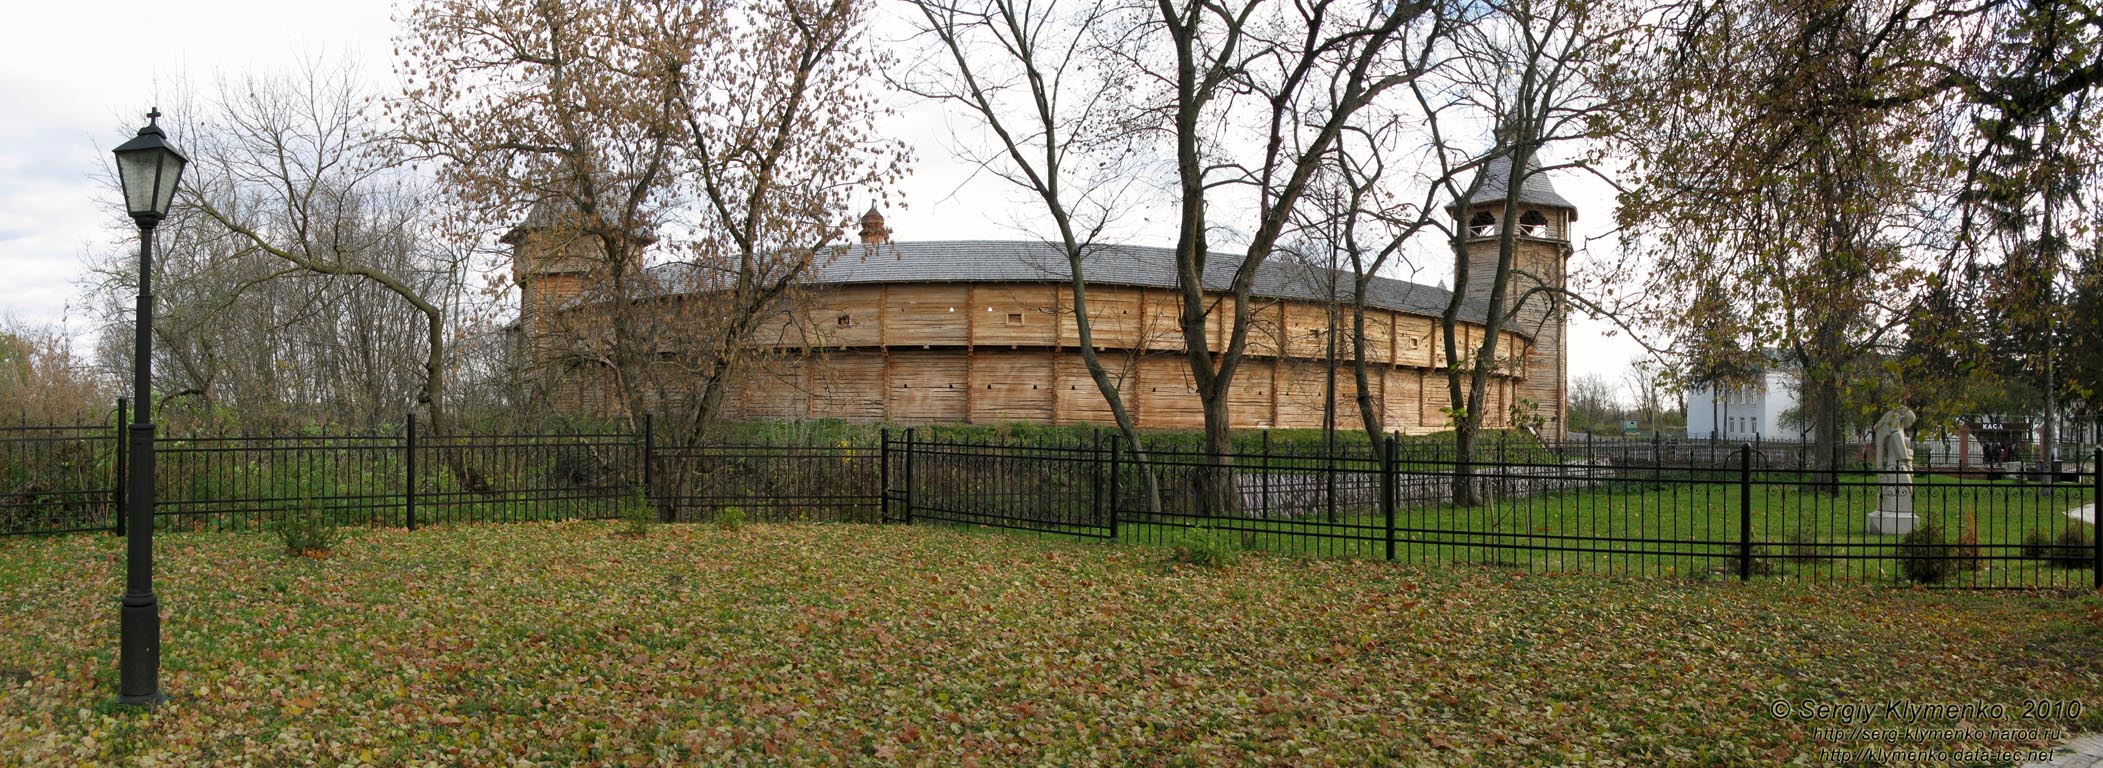 Батуринская цитадель (реконструкция, 2009 год). Вид снаружи.